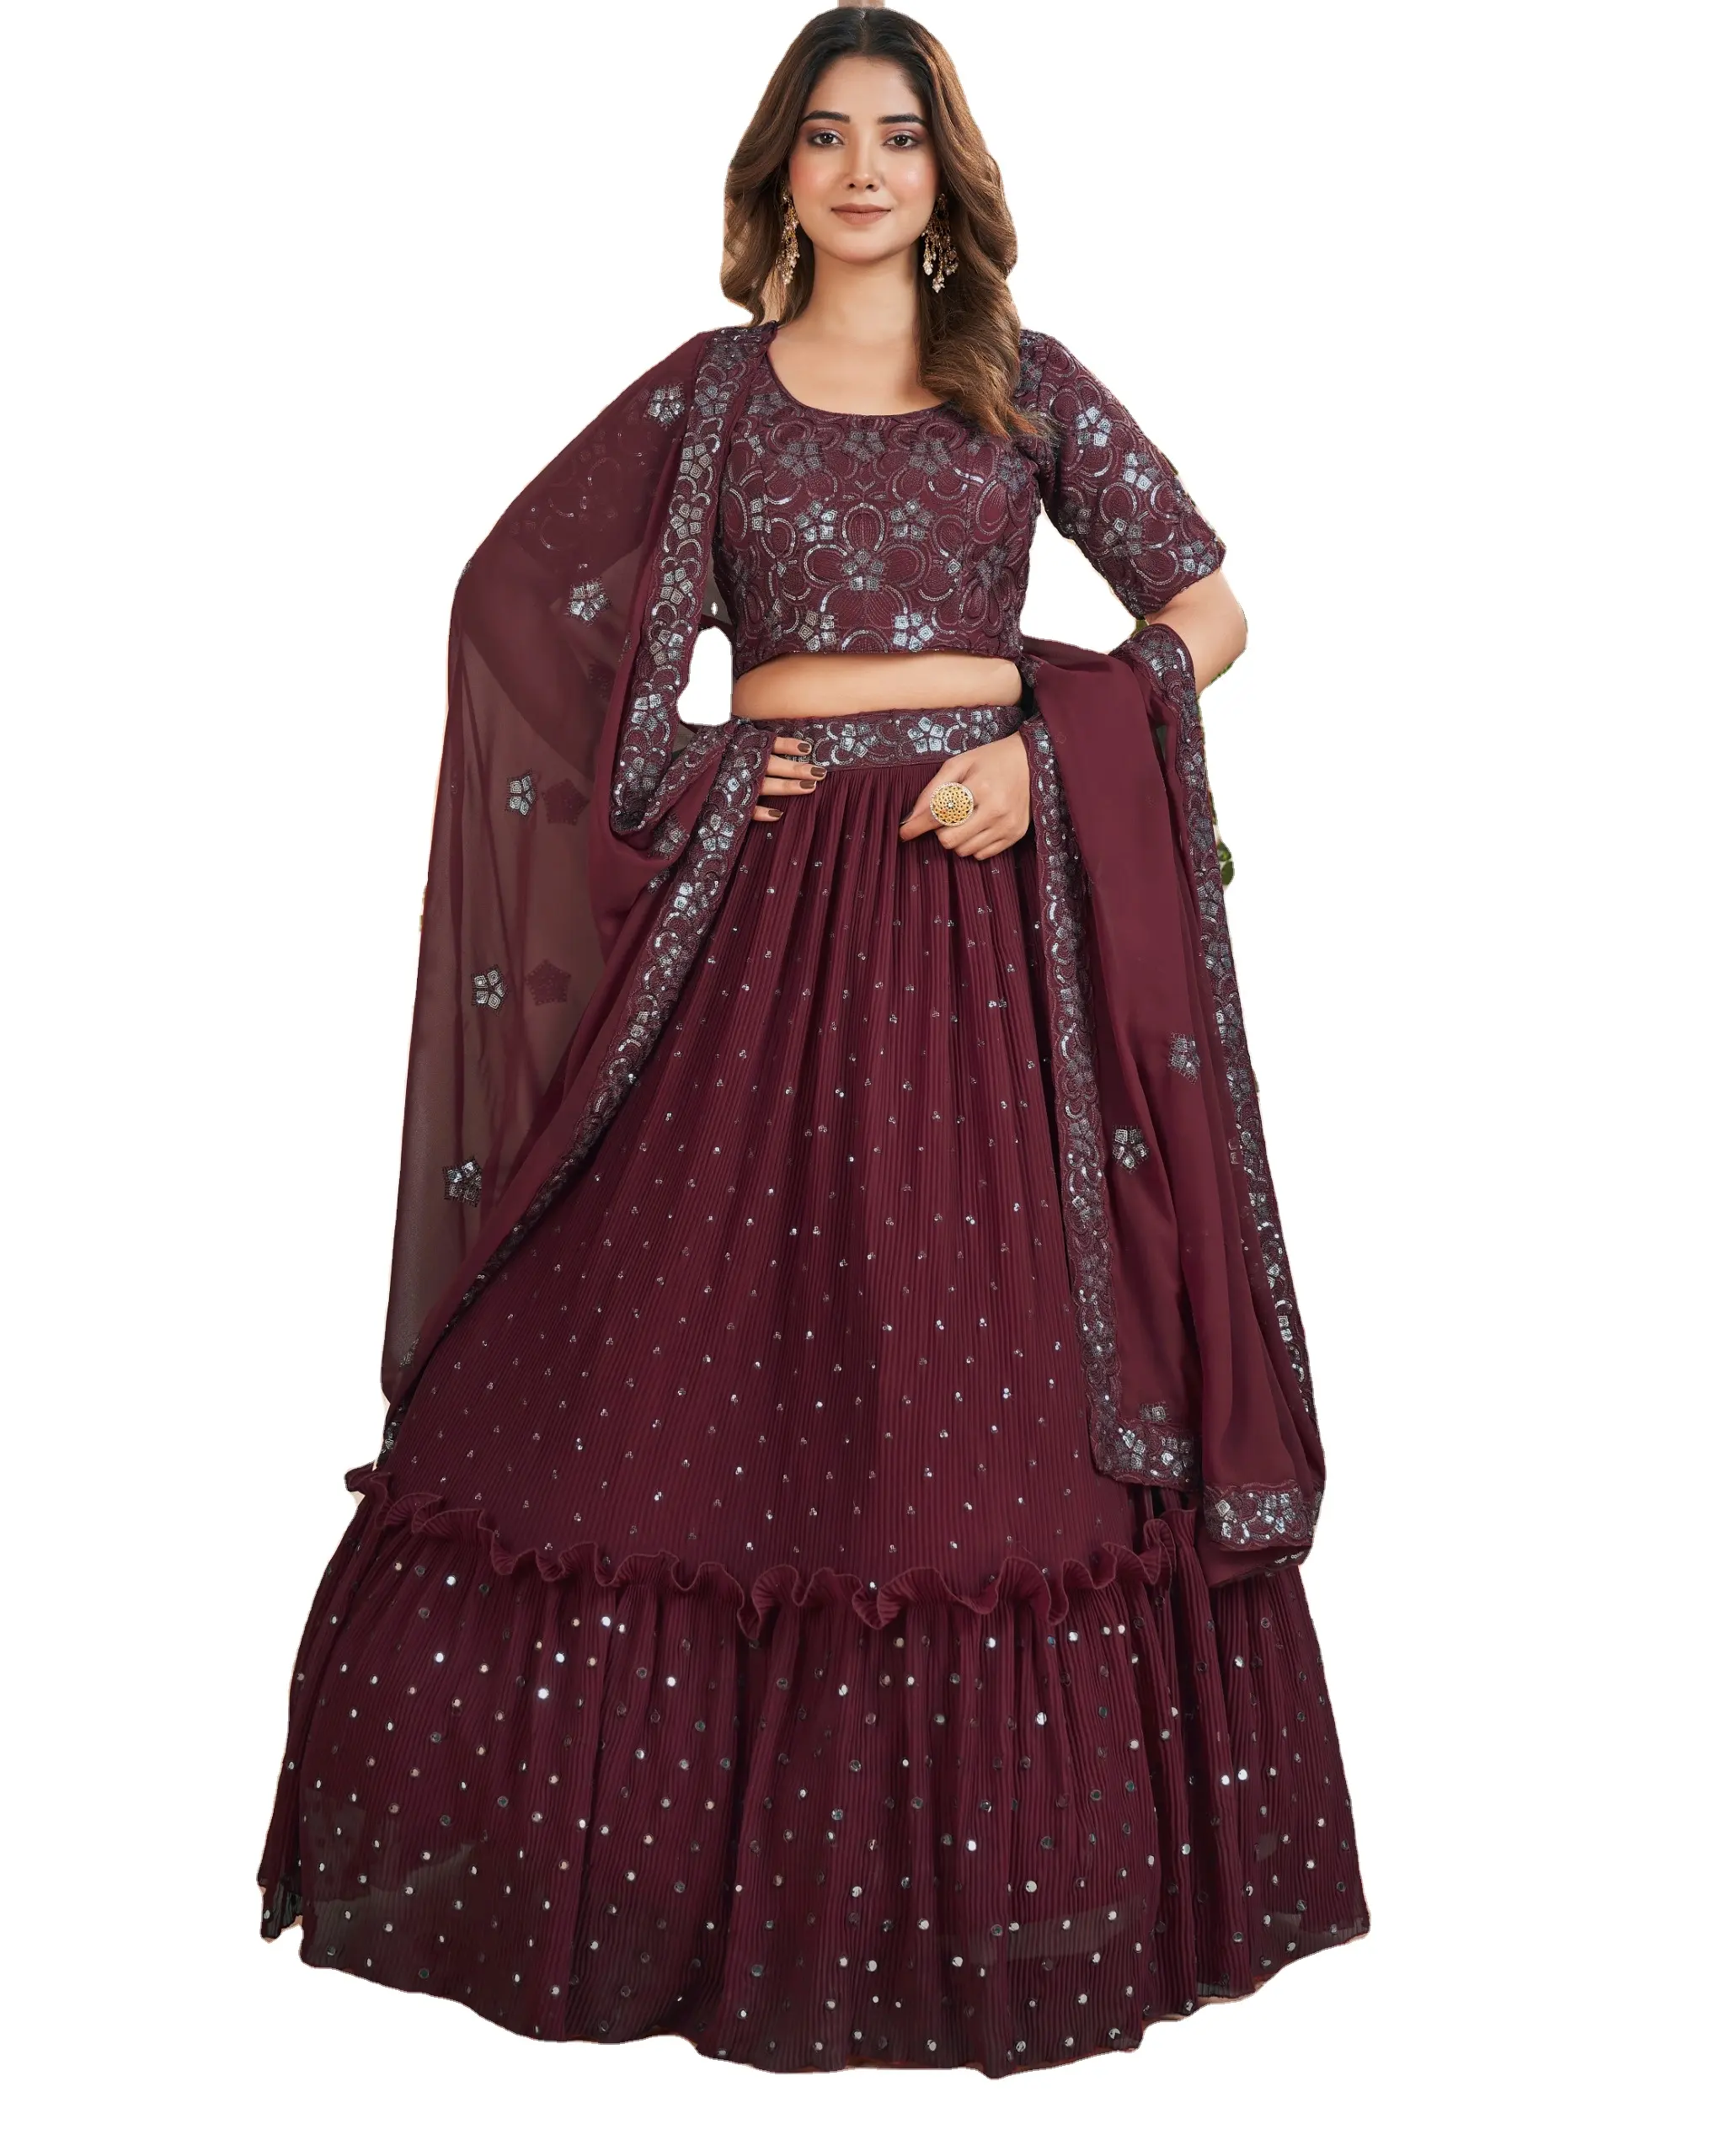 Dernière nouvelle collection Choli pour vêtements pour femmes Georgette semi-cousue Marun couleur Lehenga Choli fabricant et grossiste Inde